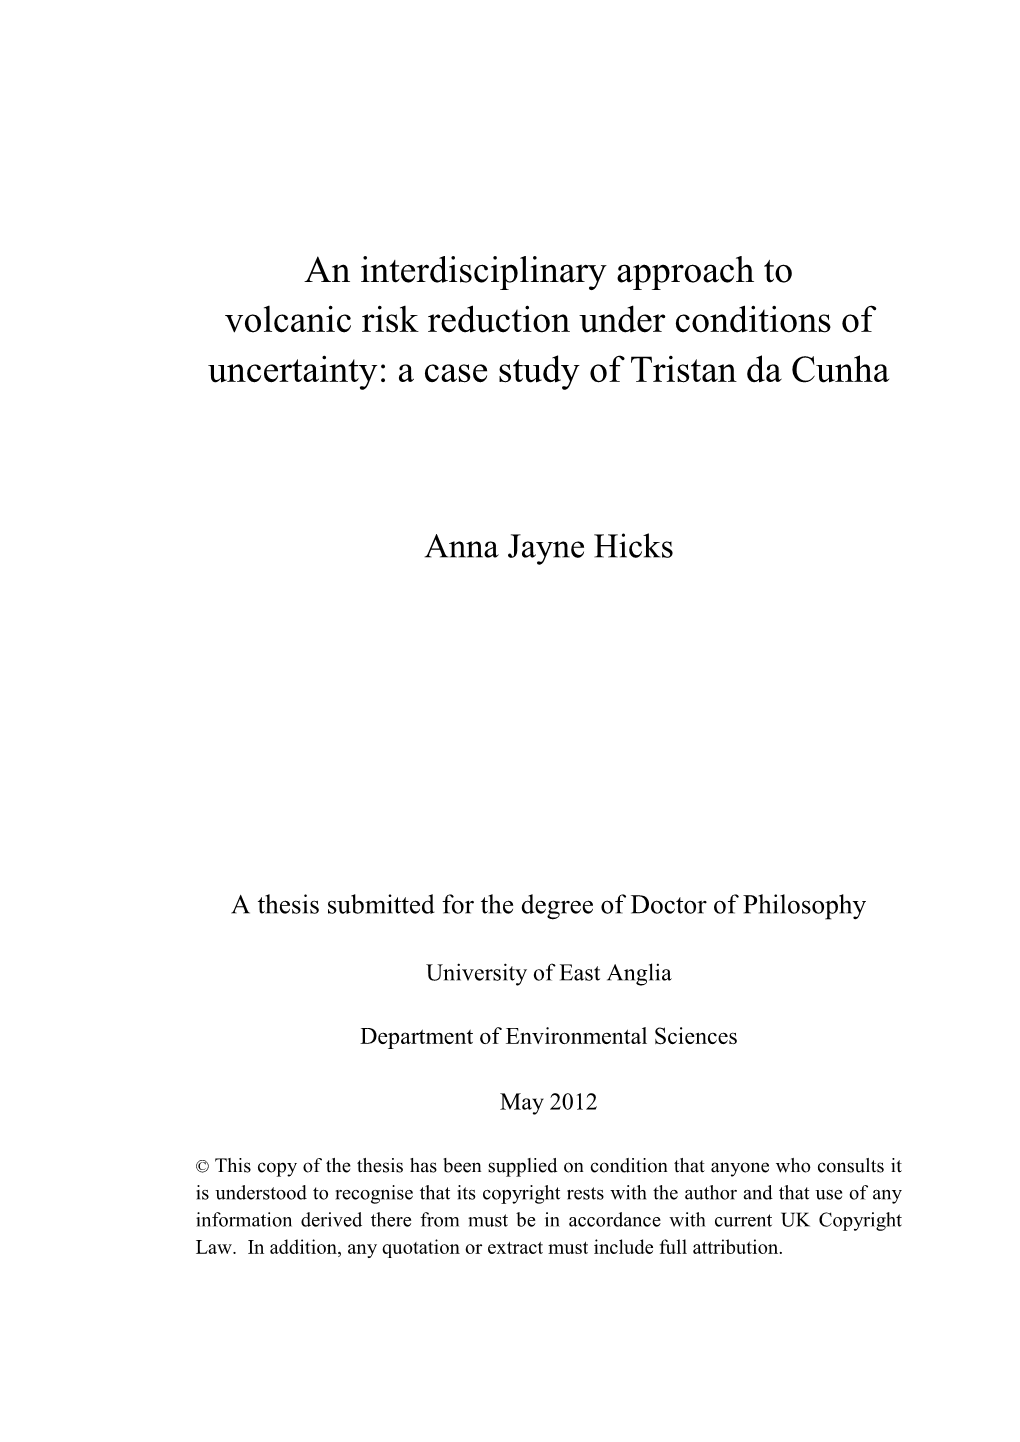 A Case Study of Tristan Da Cunha